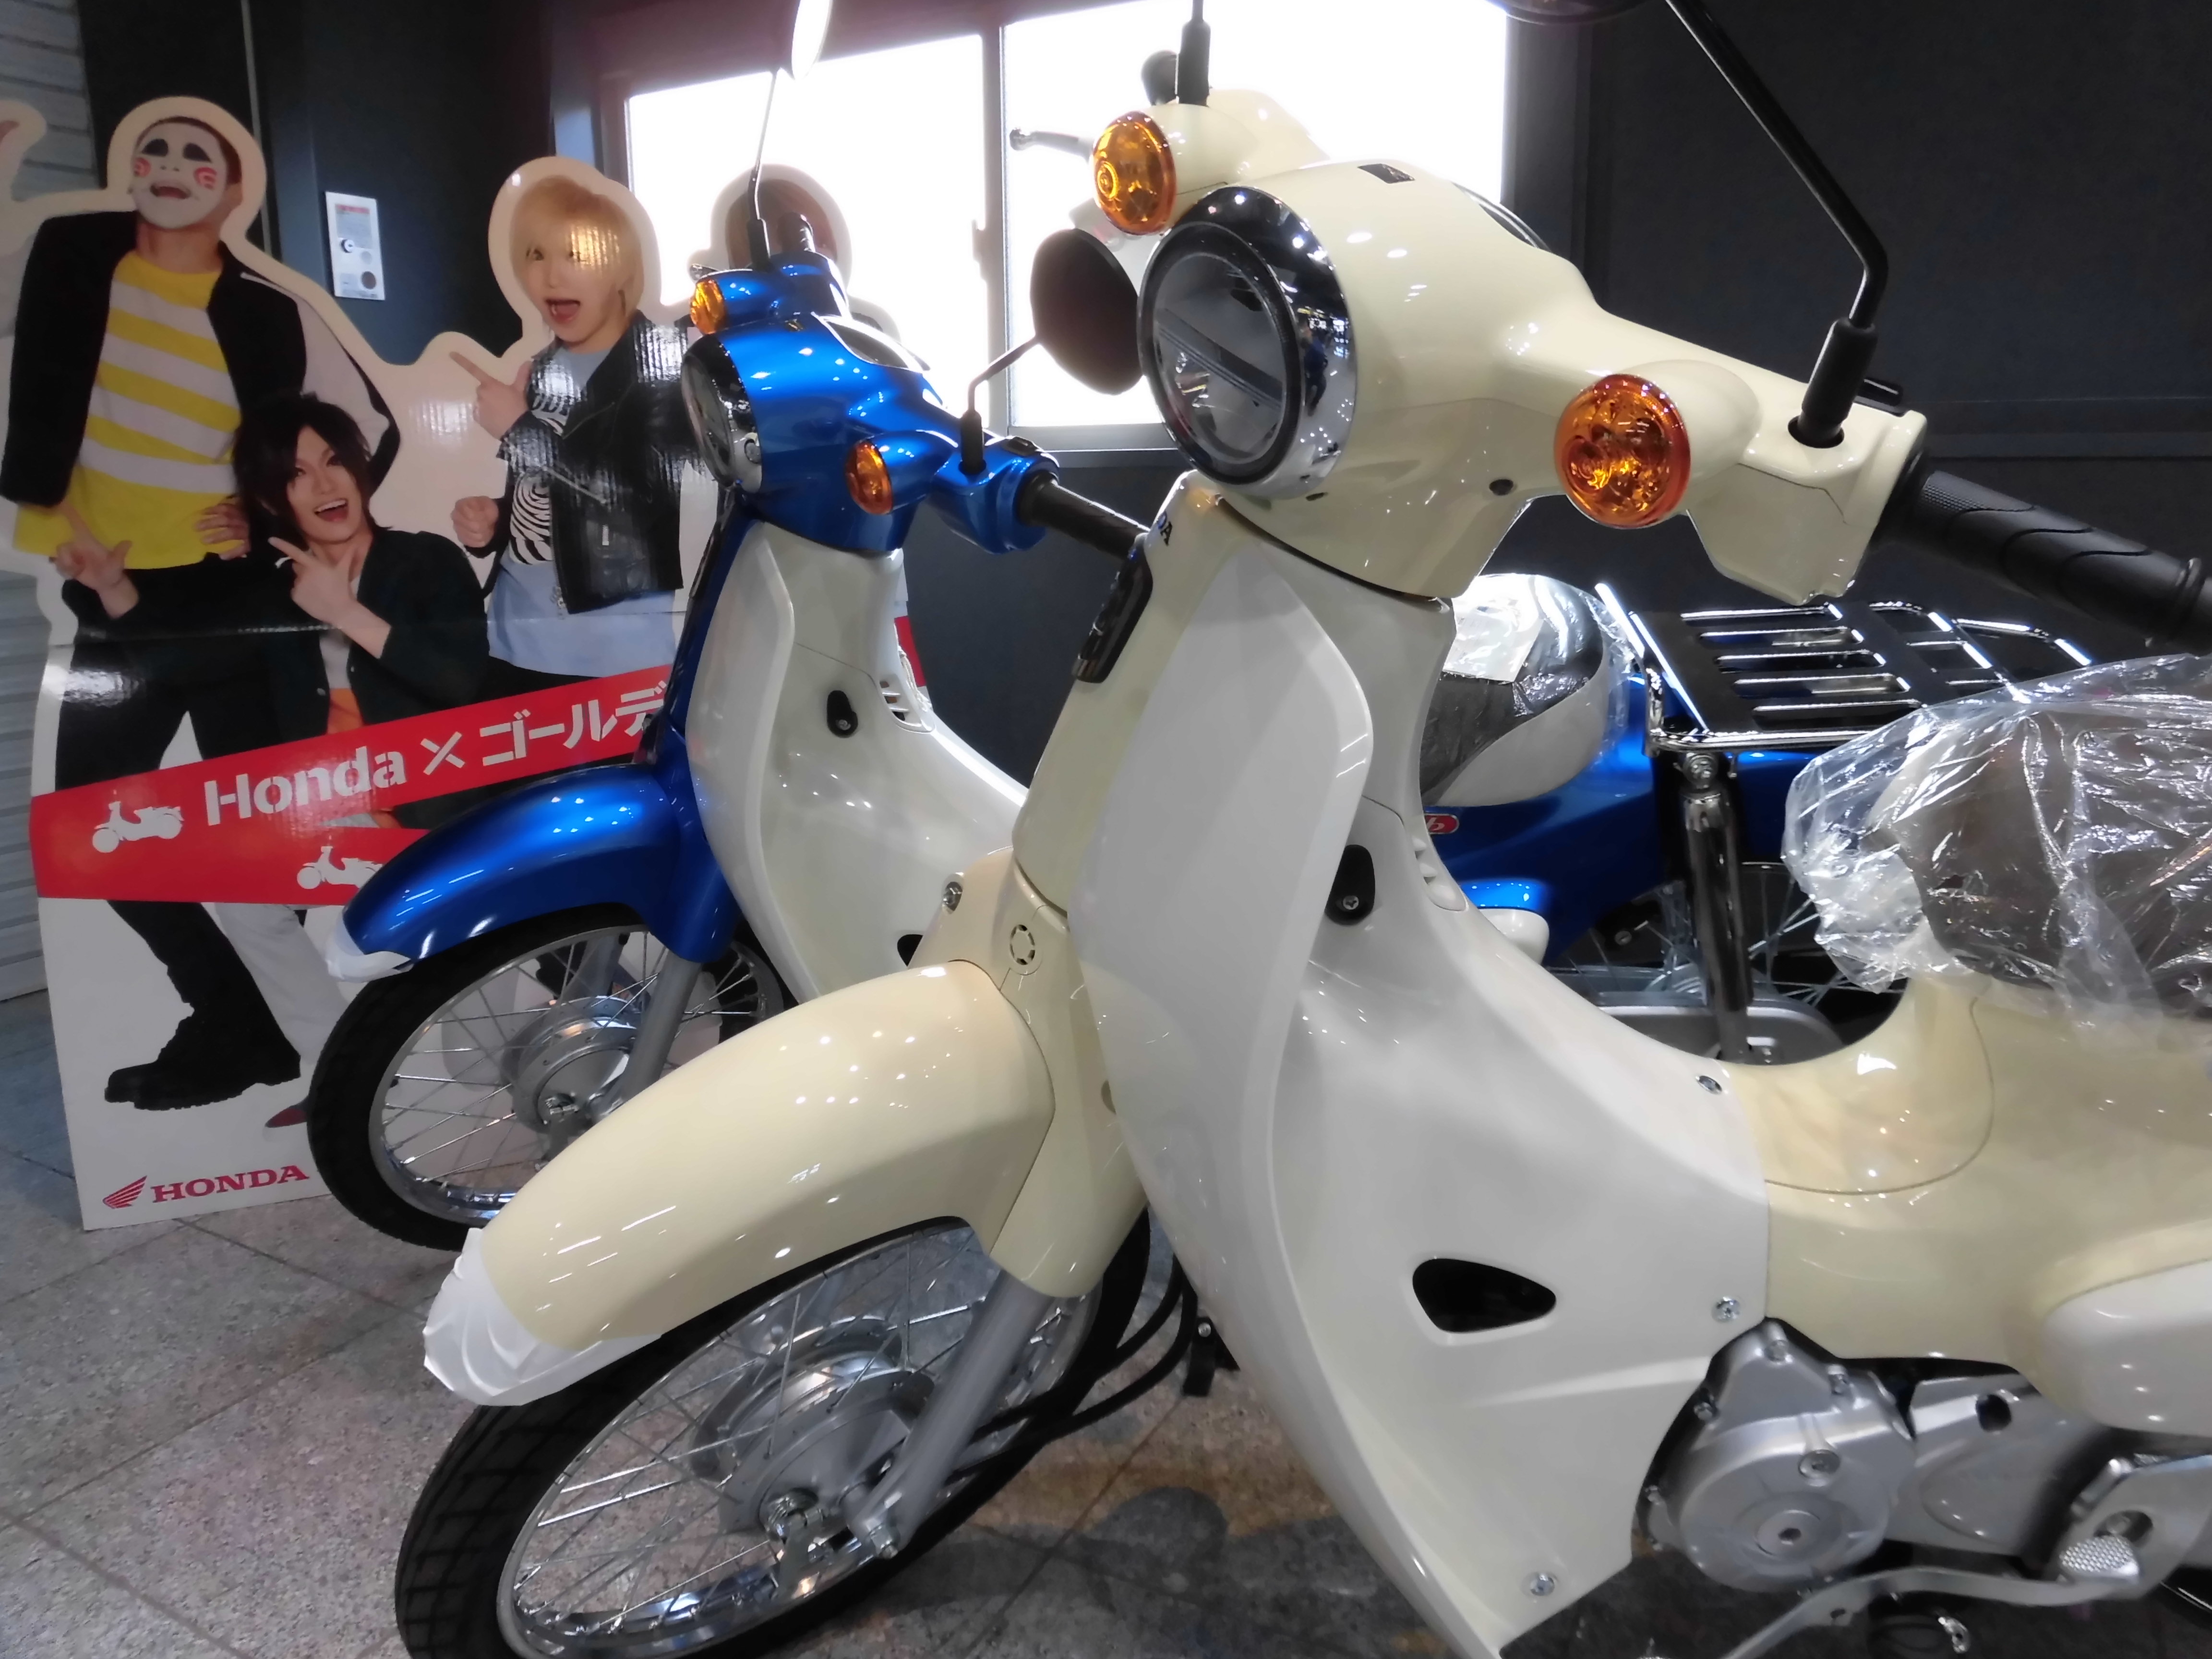 当店にも新型スーパーカブ入庫してます 最新情報 U Media ユーメディア 中古バイク 新車バイク探しの決定版 神奈川 東京でバイク探すならユーメディア